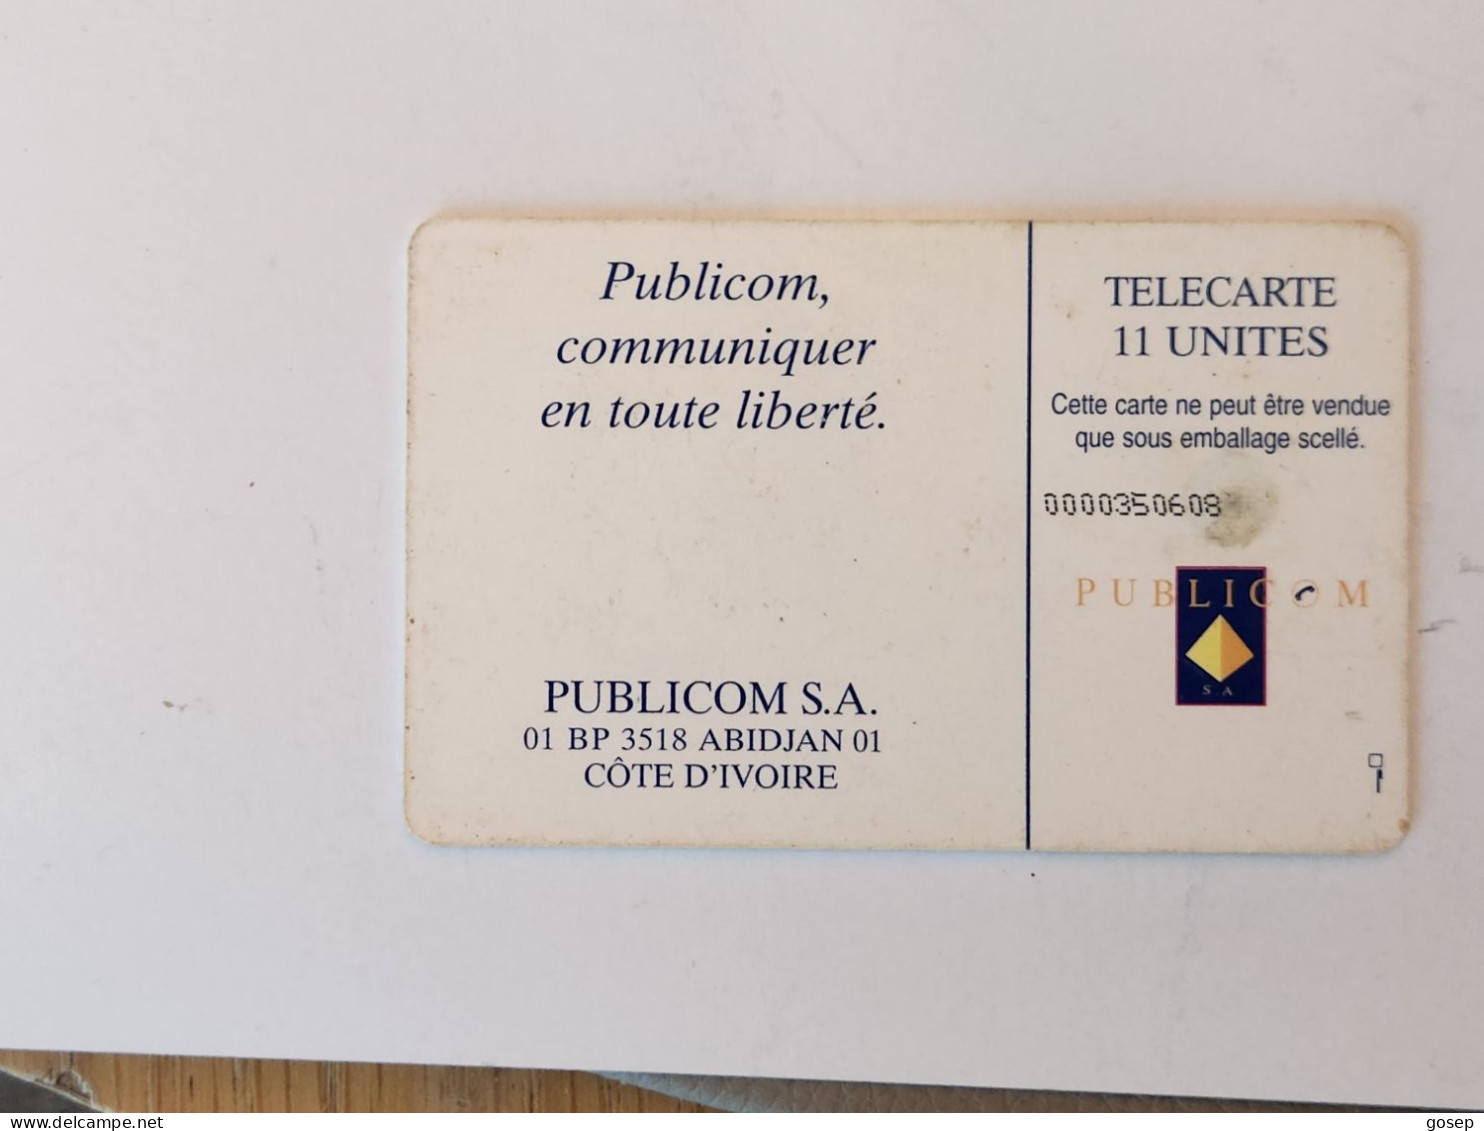 Ivory Coast-(CI-PUB-REF-0005B)-LOGO-(28)-(publicom)-(0000350608)-used Card+1card Prepiad Free - Ivory Coast